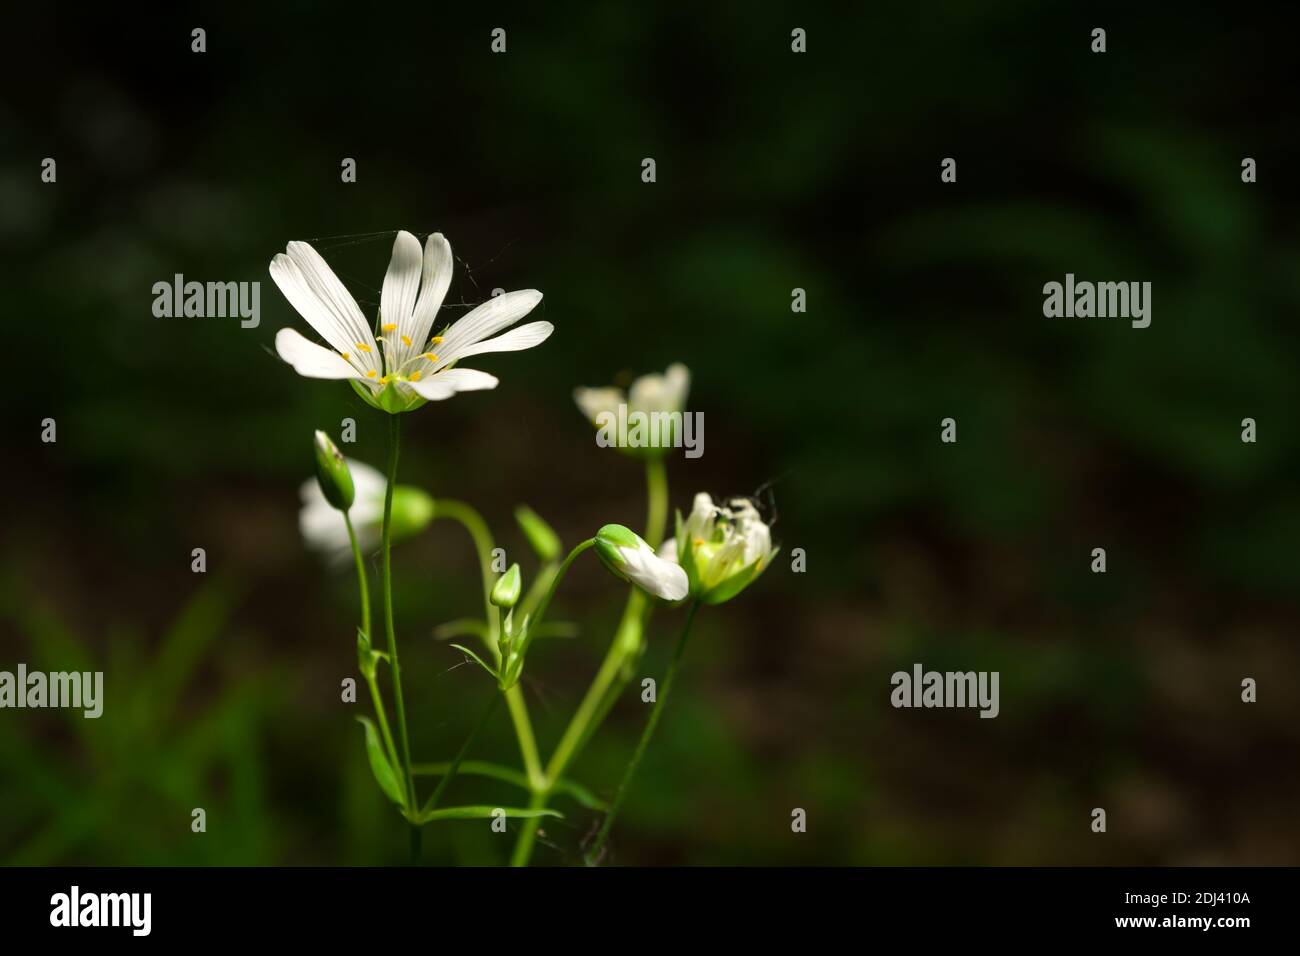 Fleurs blanches Cerastium arvense croissant dans une forêt verte, vue de printemps Banque D'Images